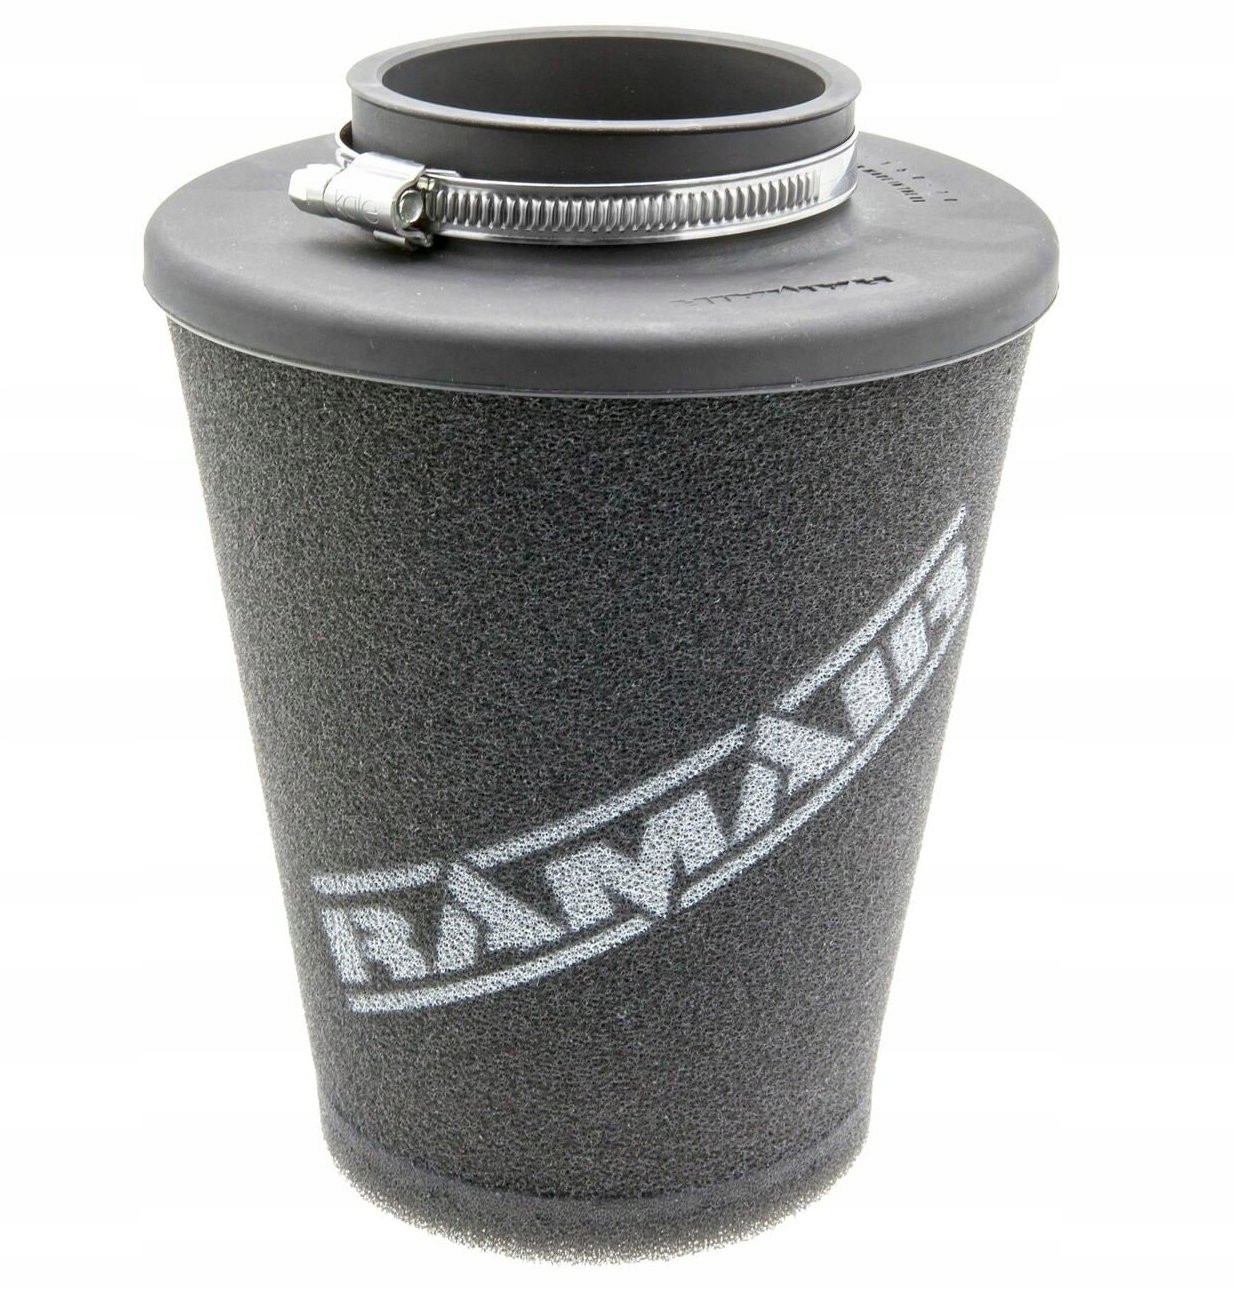 Univerzálny kónický vzduchový filter Ramair 76mm